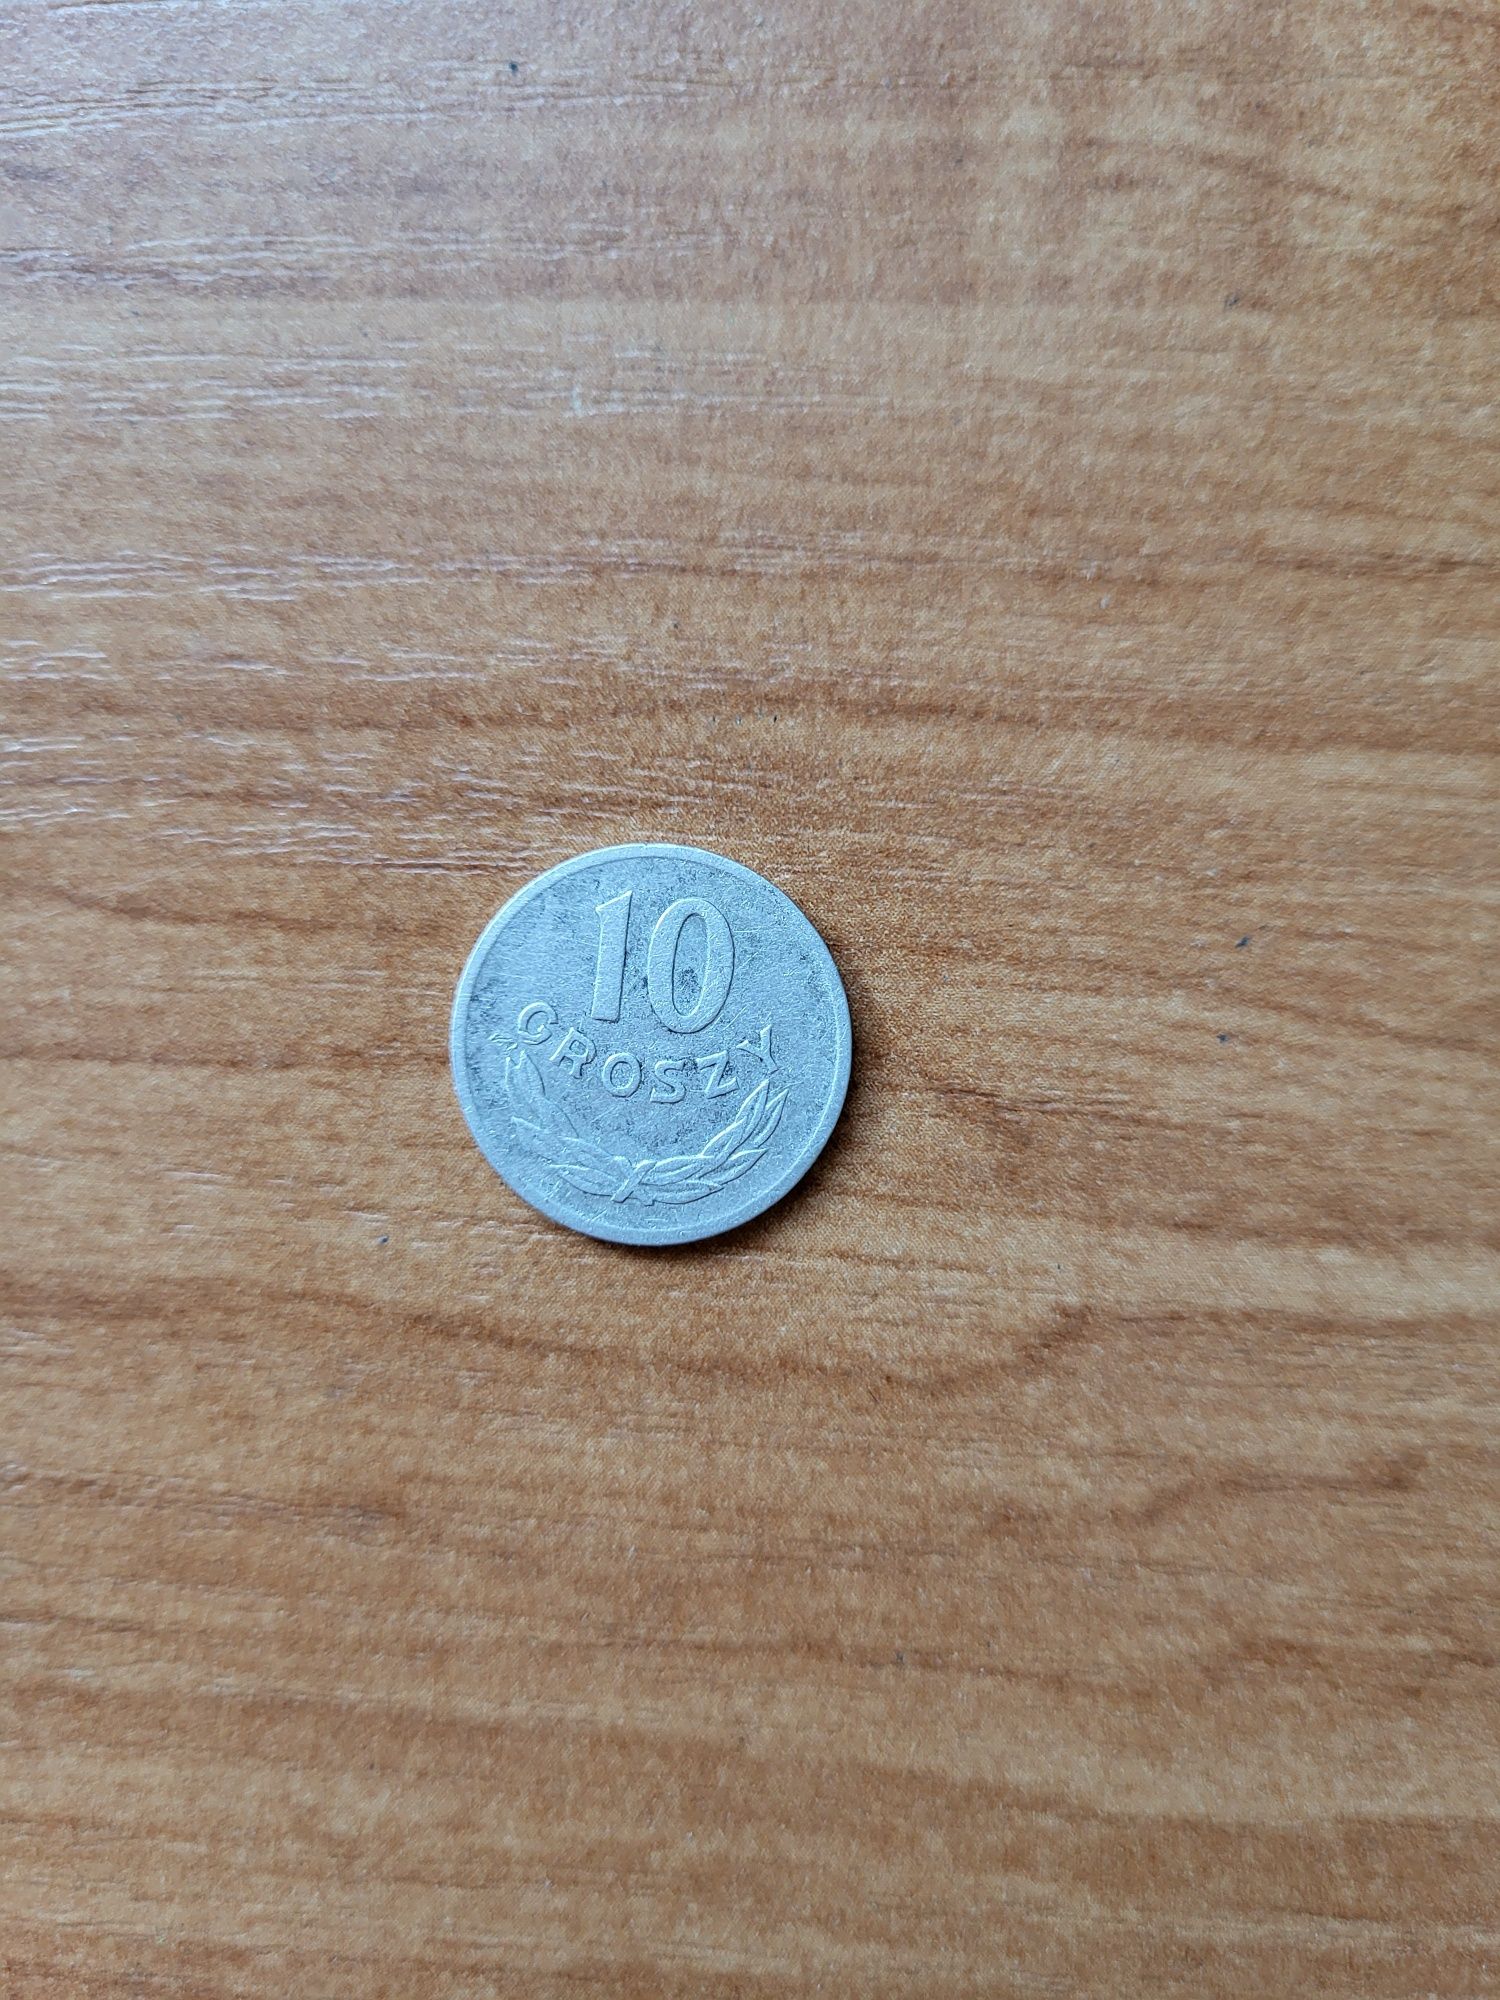 Moneta 10 groszy z 1967 roku